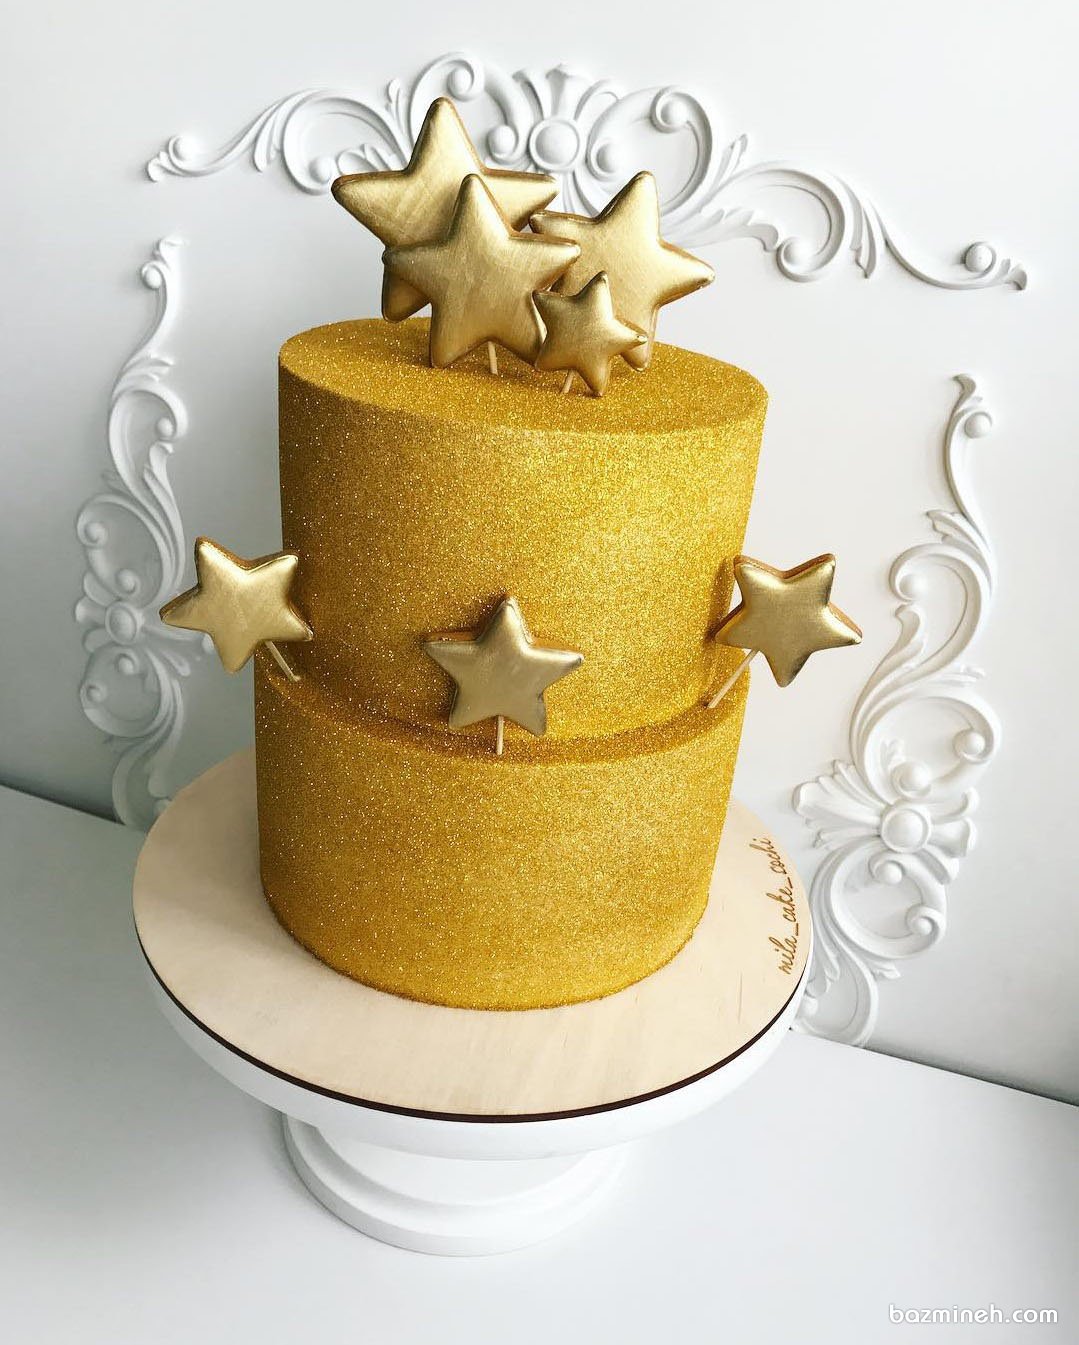 کیک دو طبقه جشن تولد بزرگسال با روکش شاینی طلایی و تم ستاره